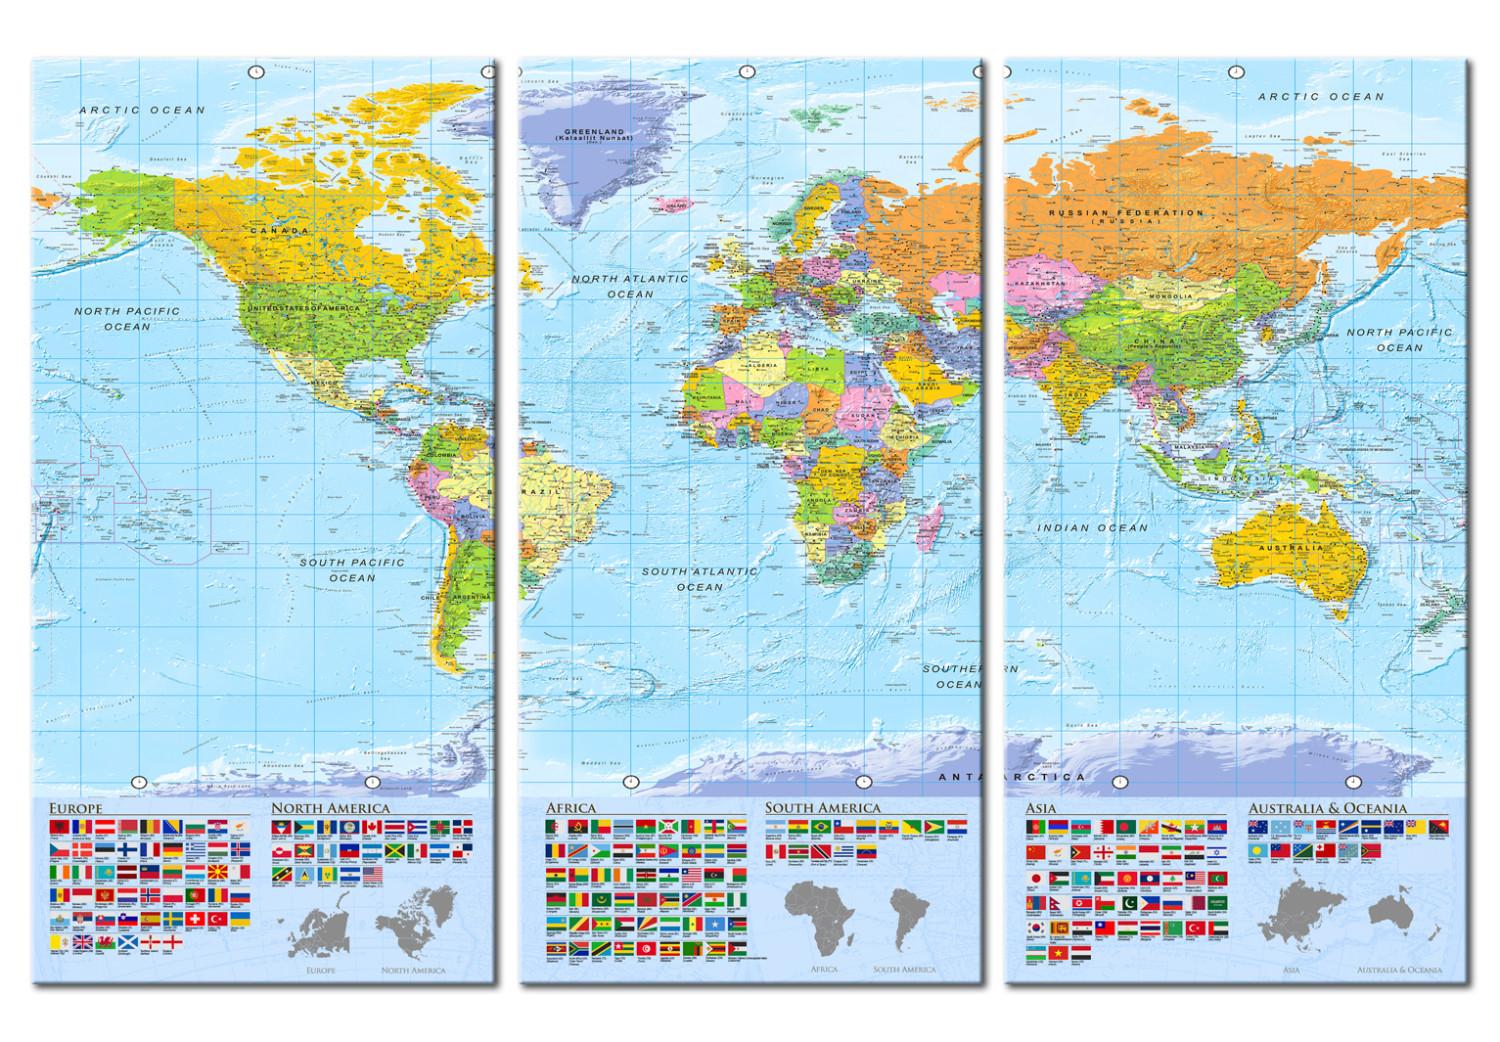 Tablero decorativo en corcho World: Colourful Map II [Cork Map]